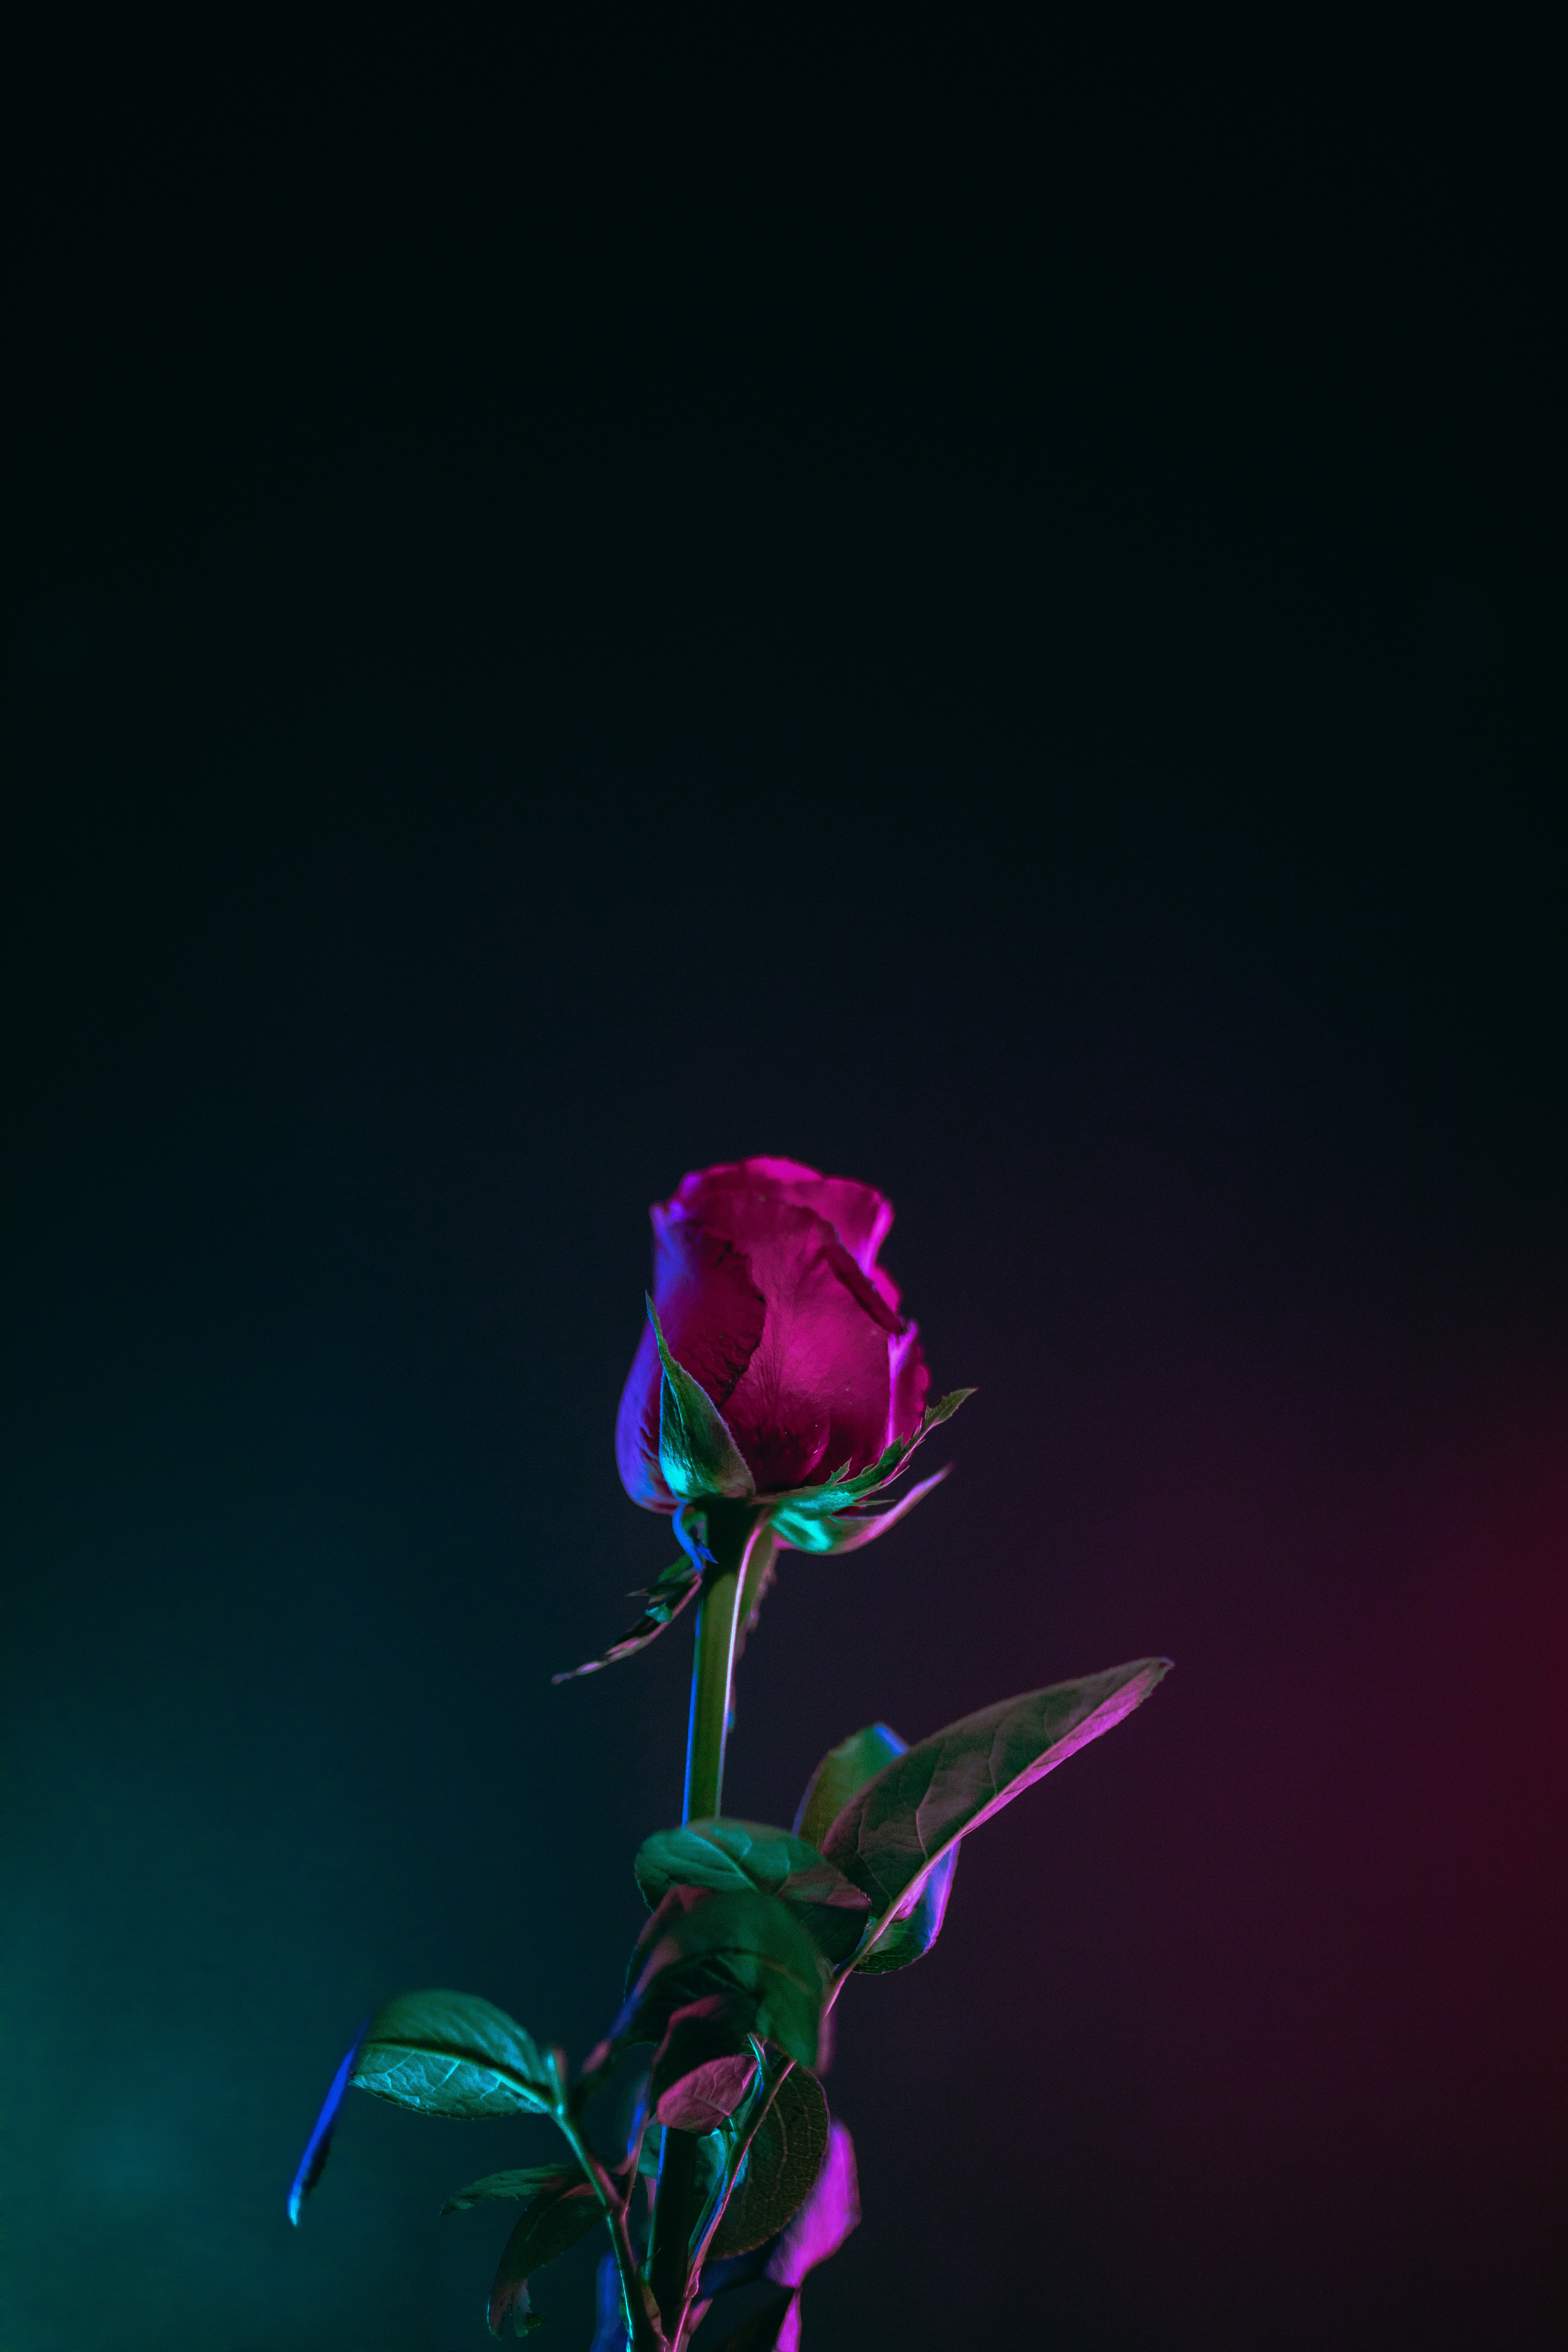 rose flower, dark background, flowers, leaves, rose, bud, stem, stalk cellphone